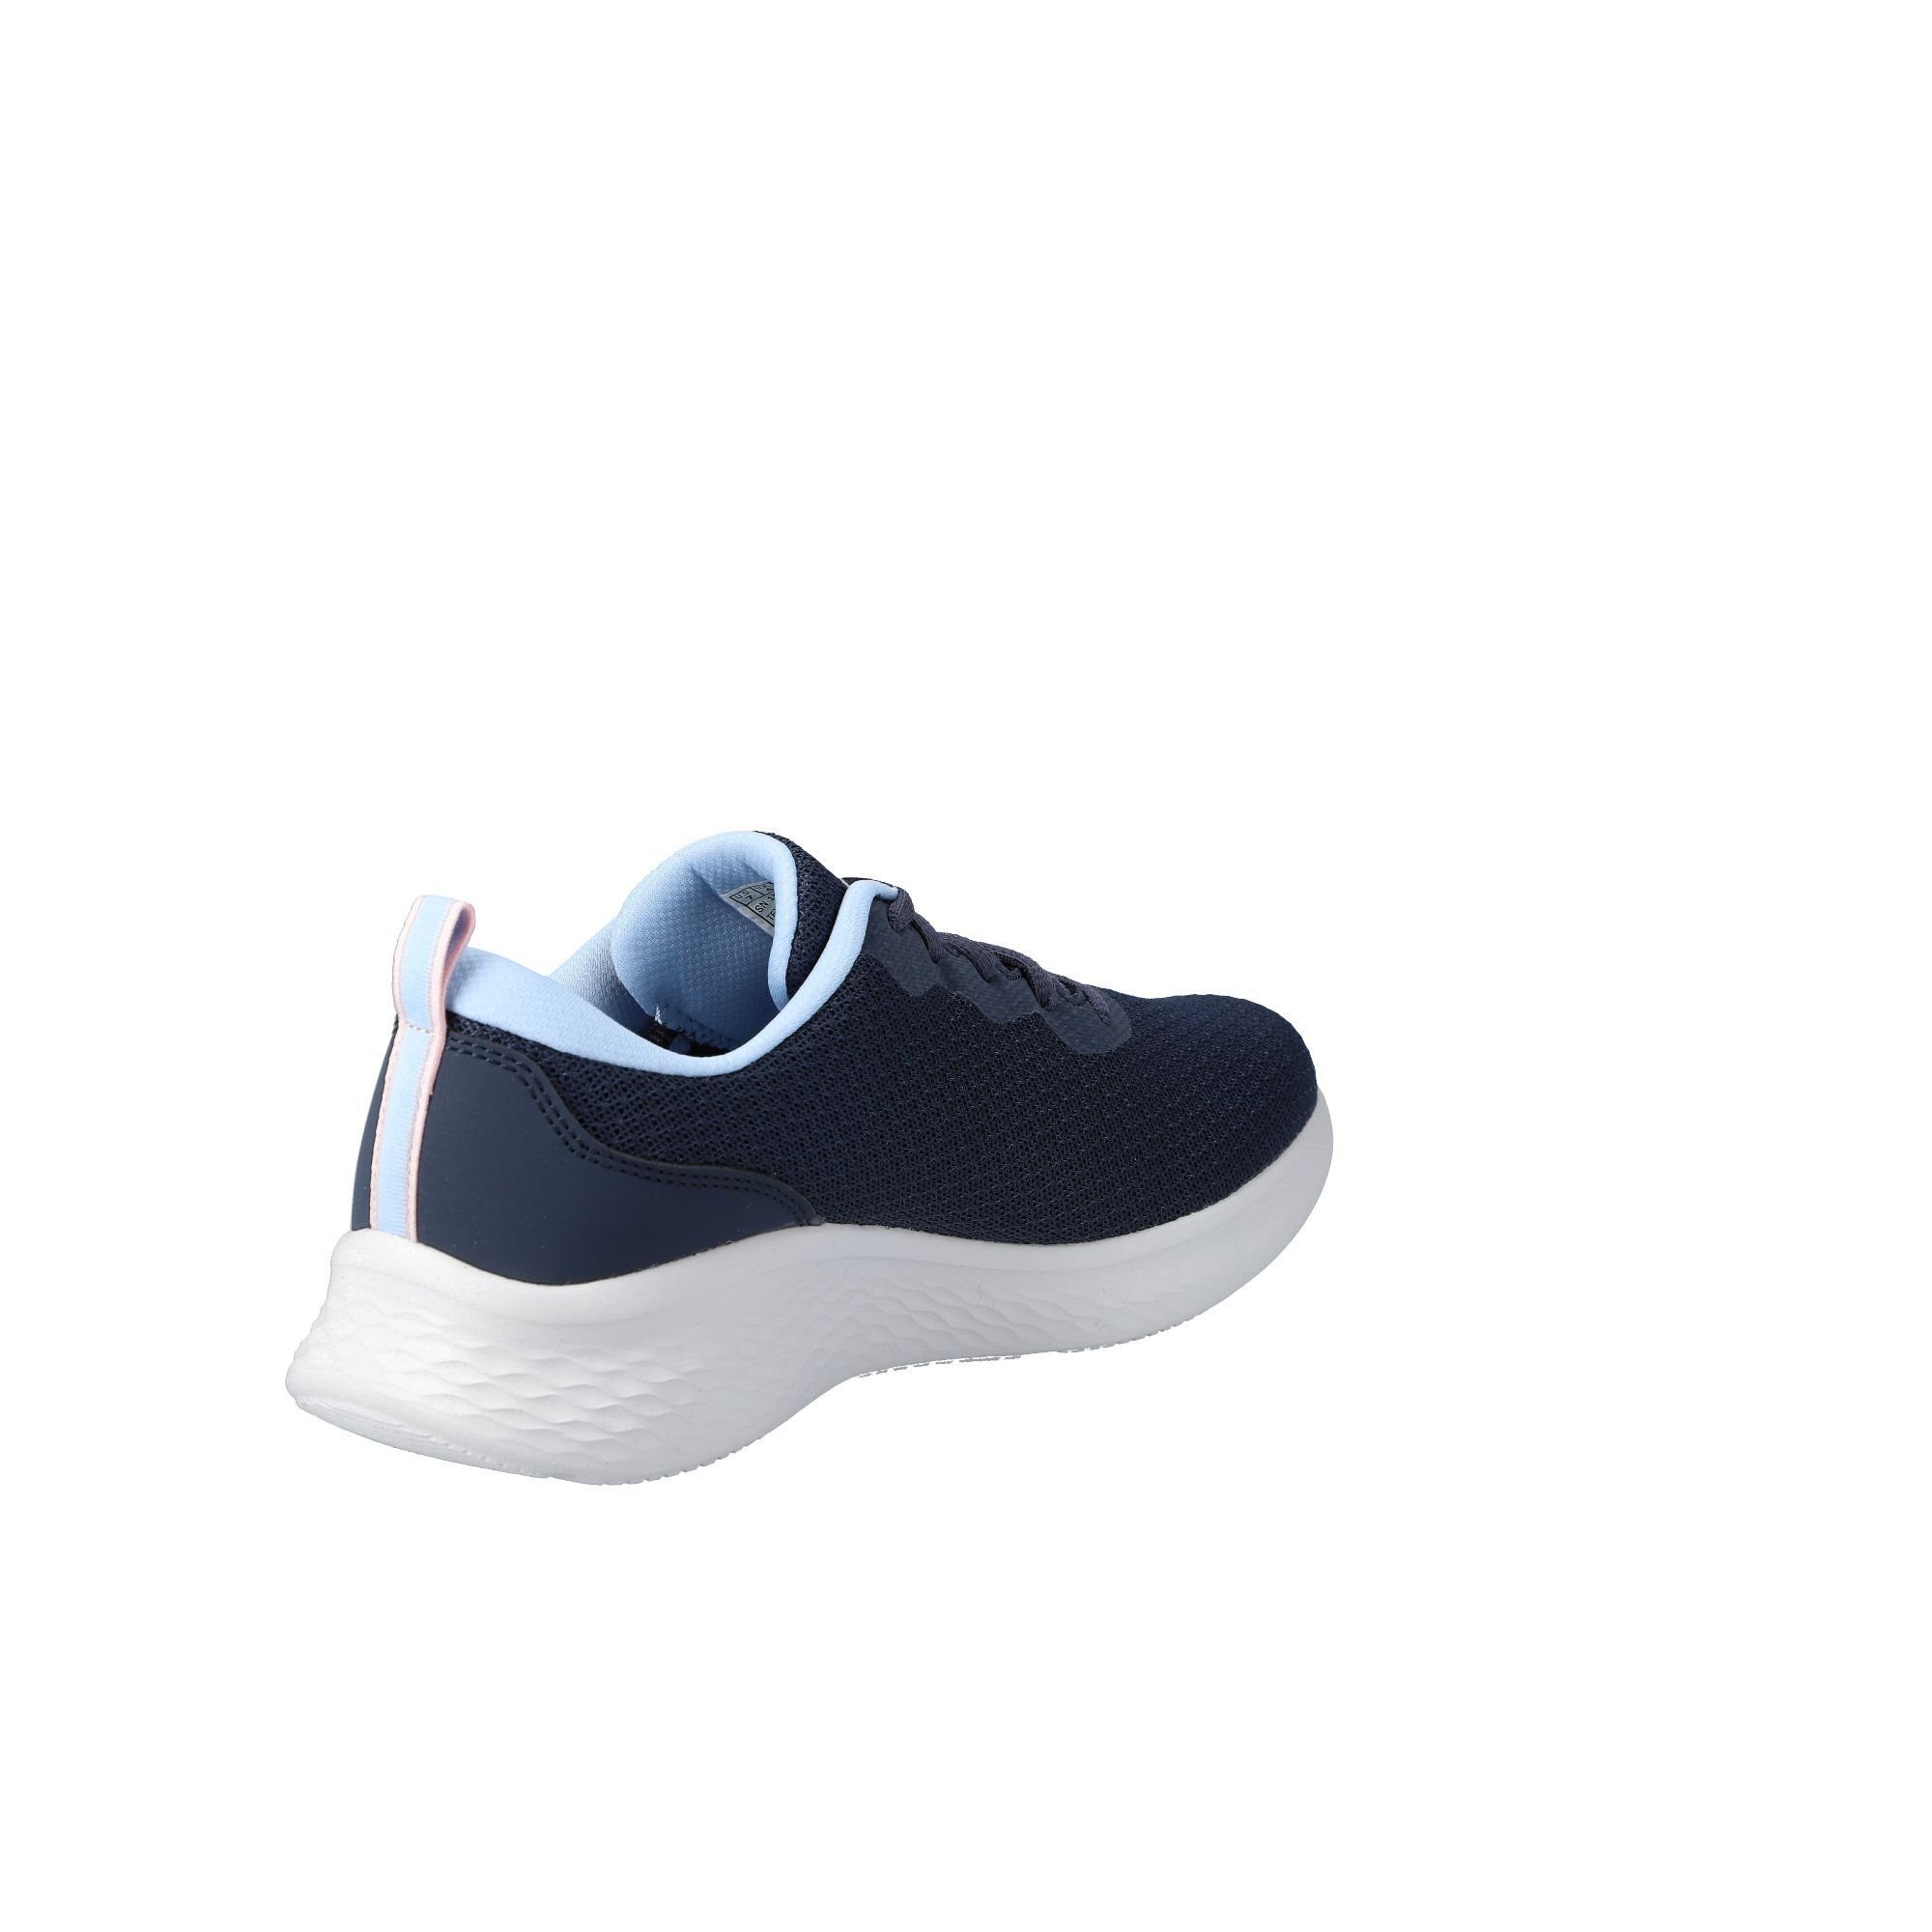 Sneaker Skechers navy/blue